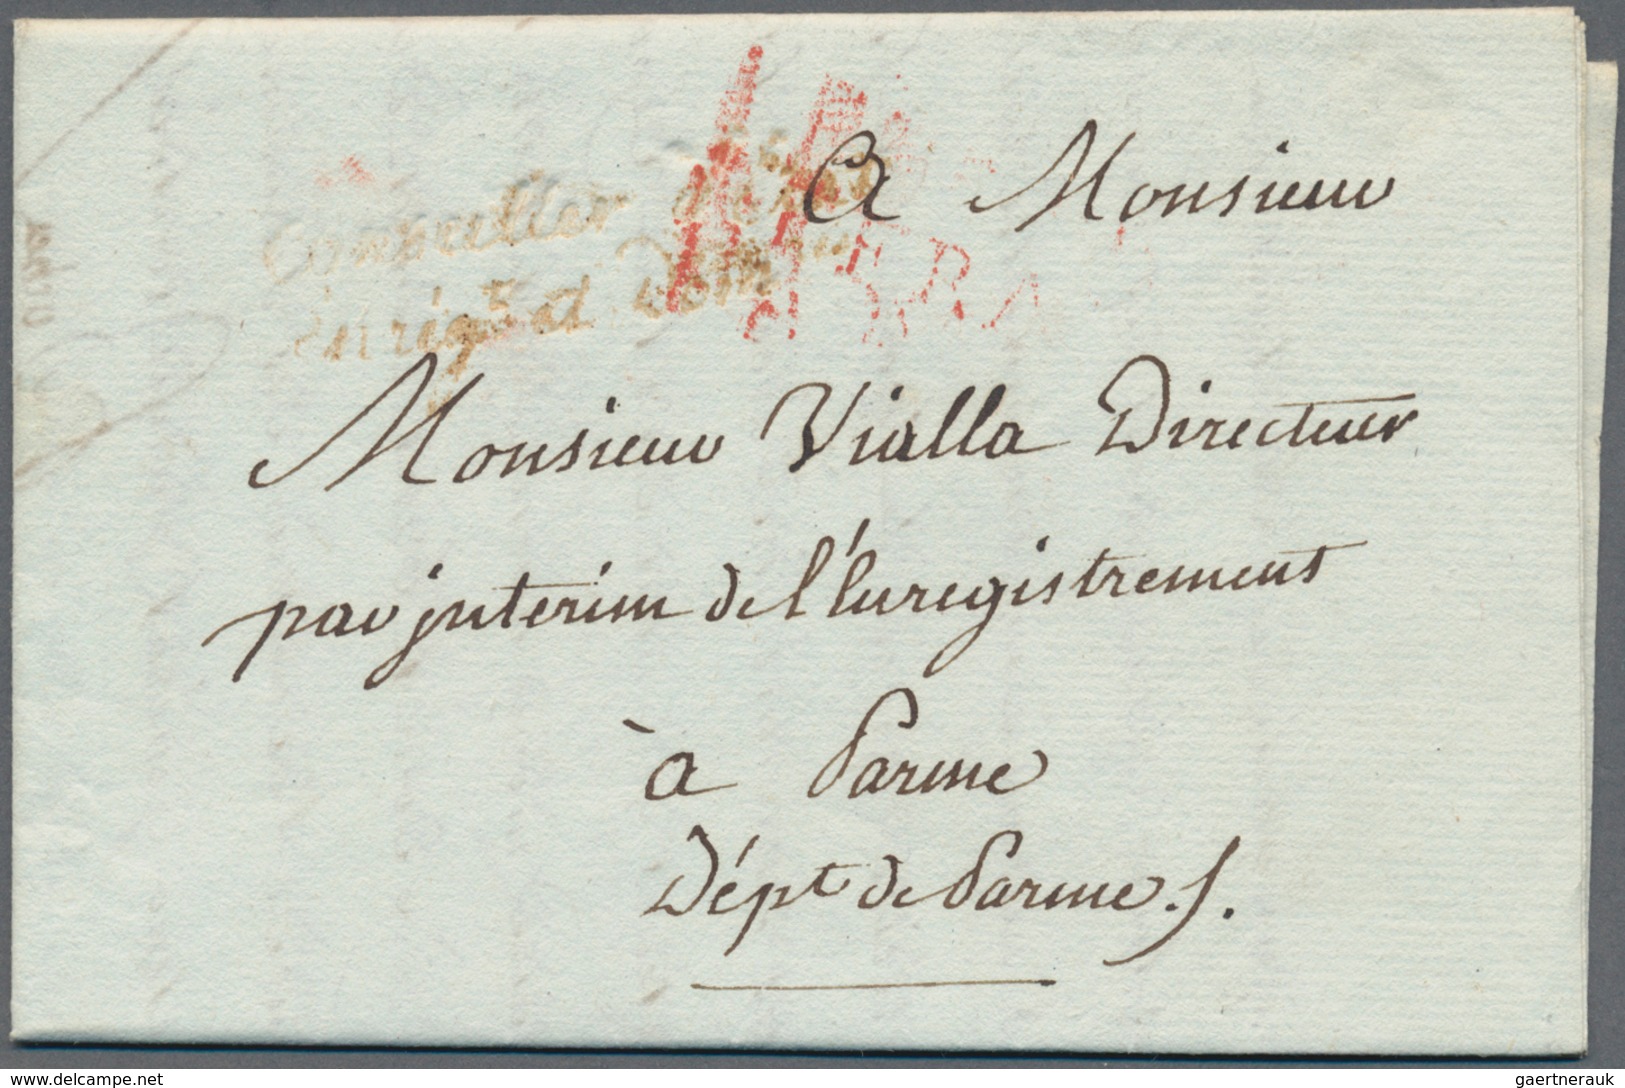 Frankreich - Vorphilatelie: 1720/1870 (ca.), enormous accumulation of apprx. 1.000 (roughly estimate